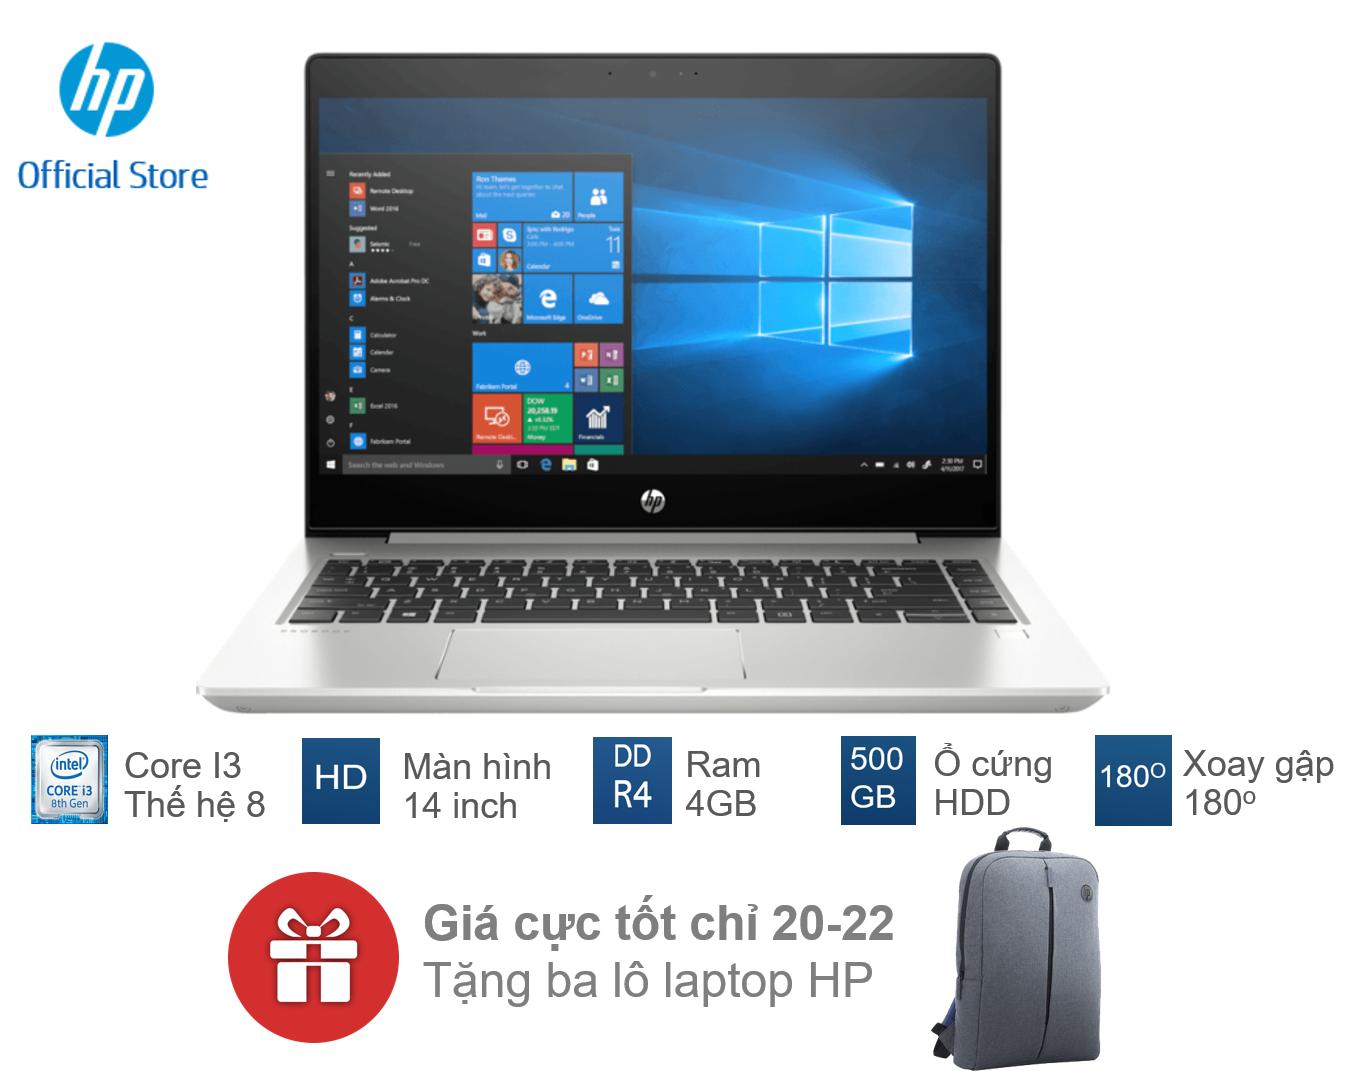 Laptop HP Probook 440 G6 5YM63PA có thiết kế khá mỏng